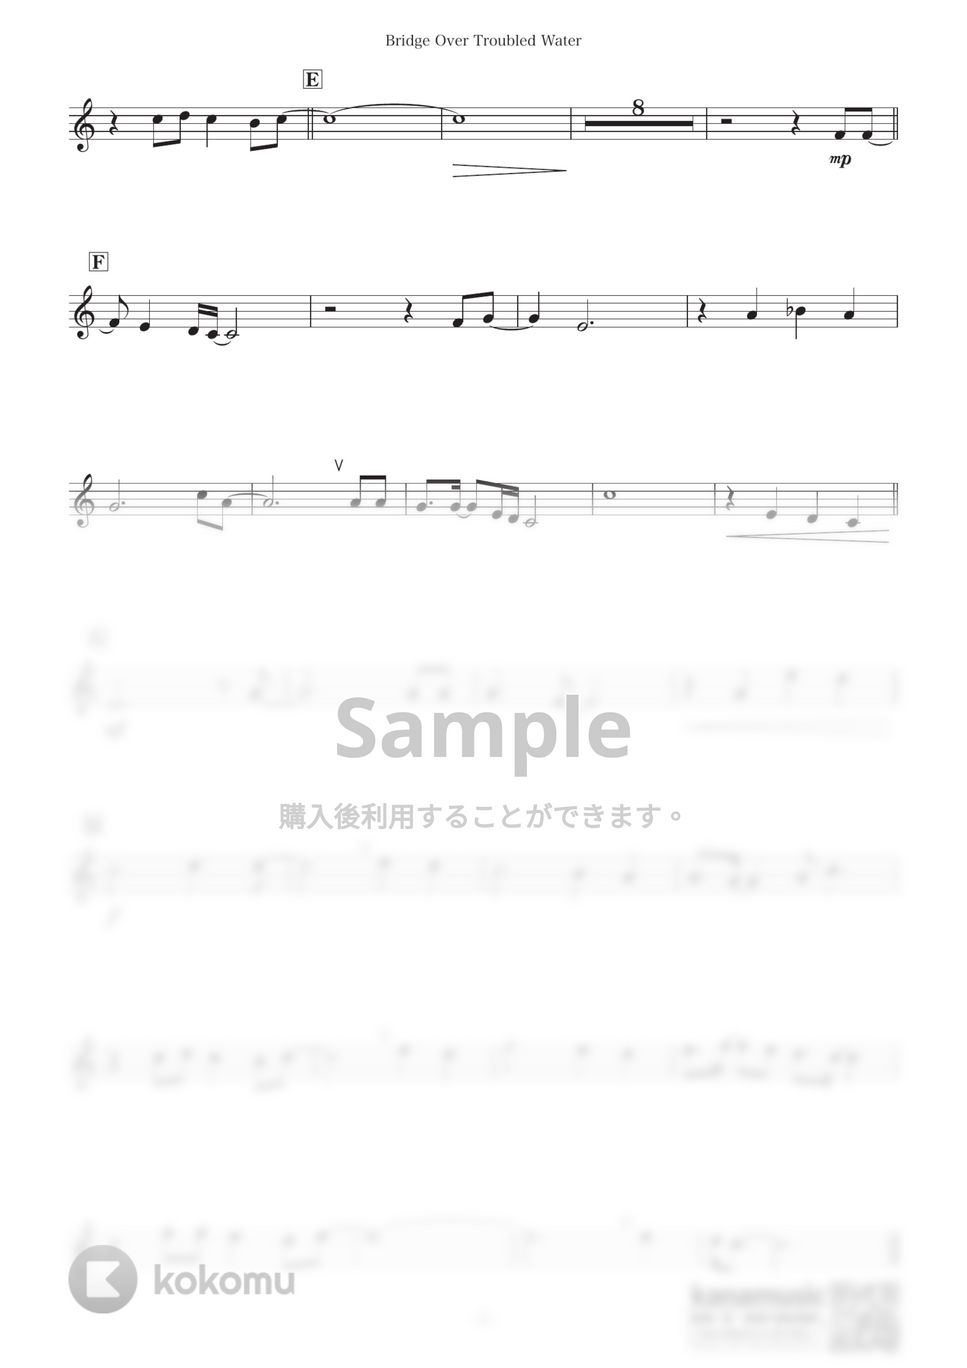 サイモン&ガーファンクル - 明日に架ける橋 (E♭) by kanamusic